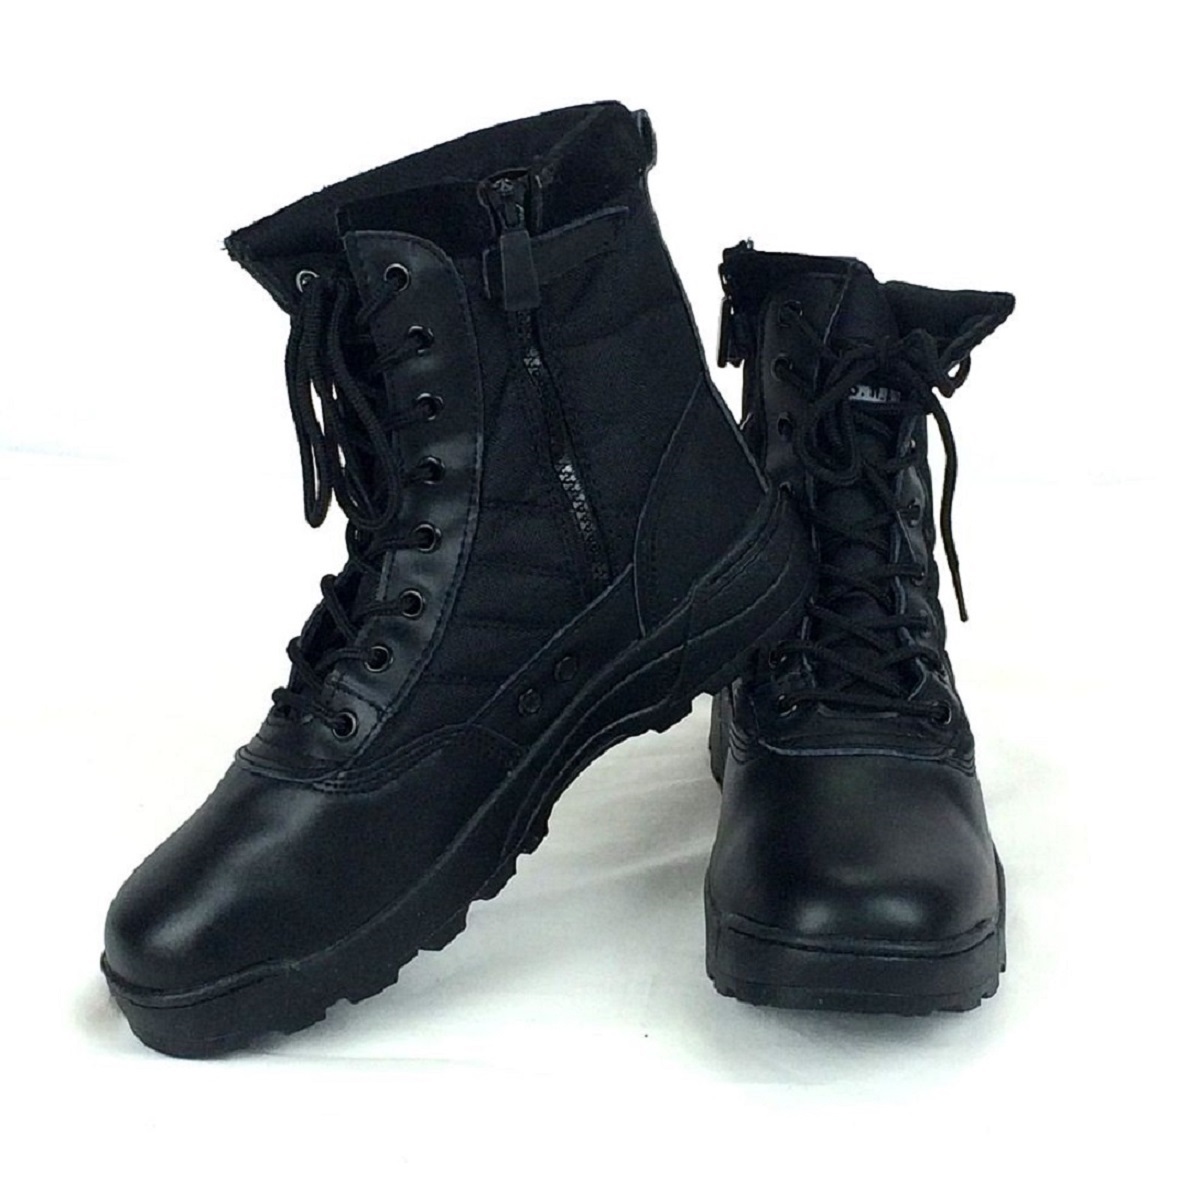 BK 26.5cm милитари ботинки Tacty karu ботинки combat ботинки rider ботинки рабочая обувь обувь боковой молния скумбиря ge мужской ботинки 